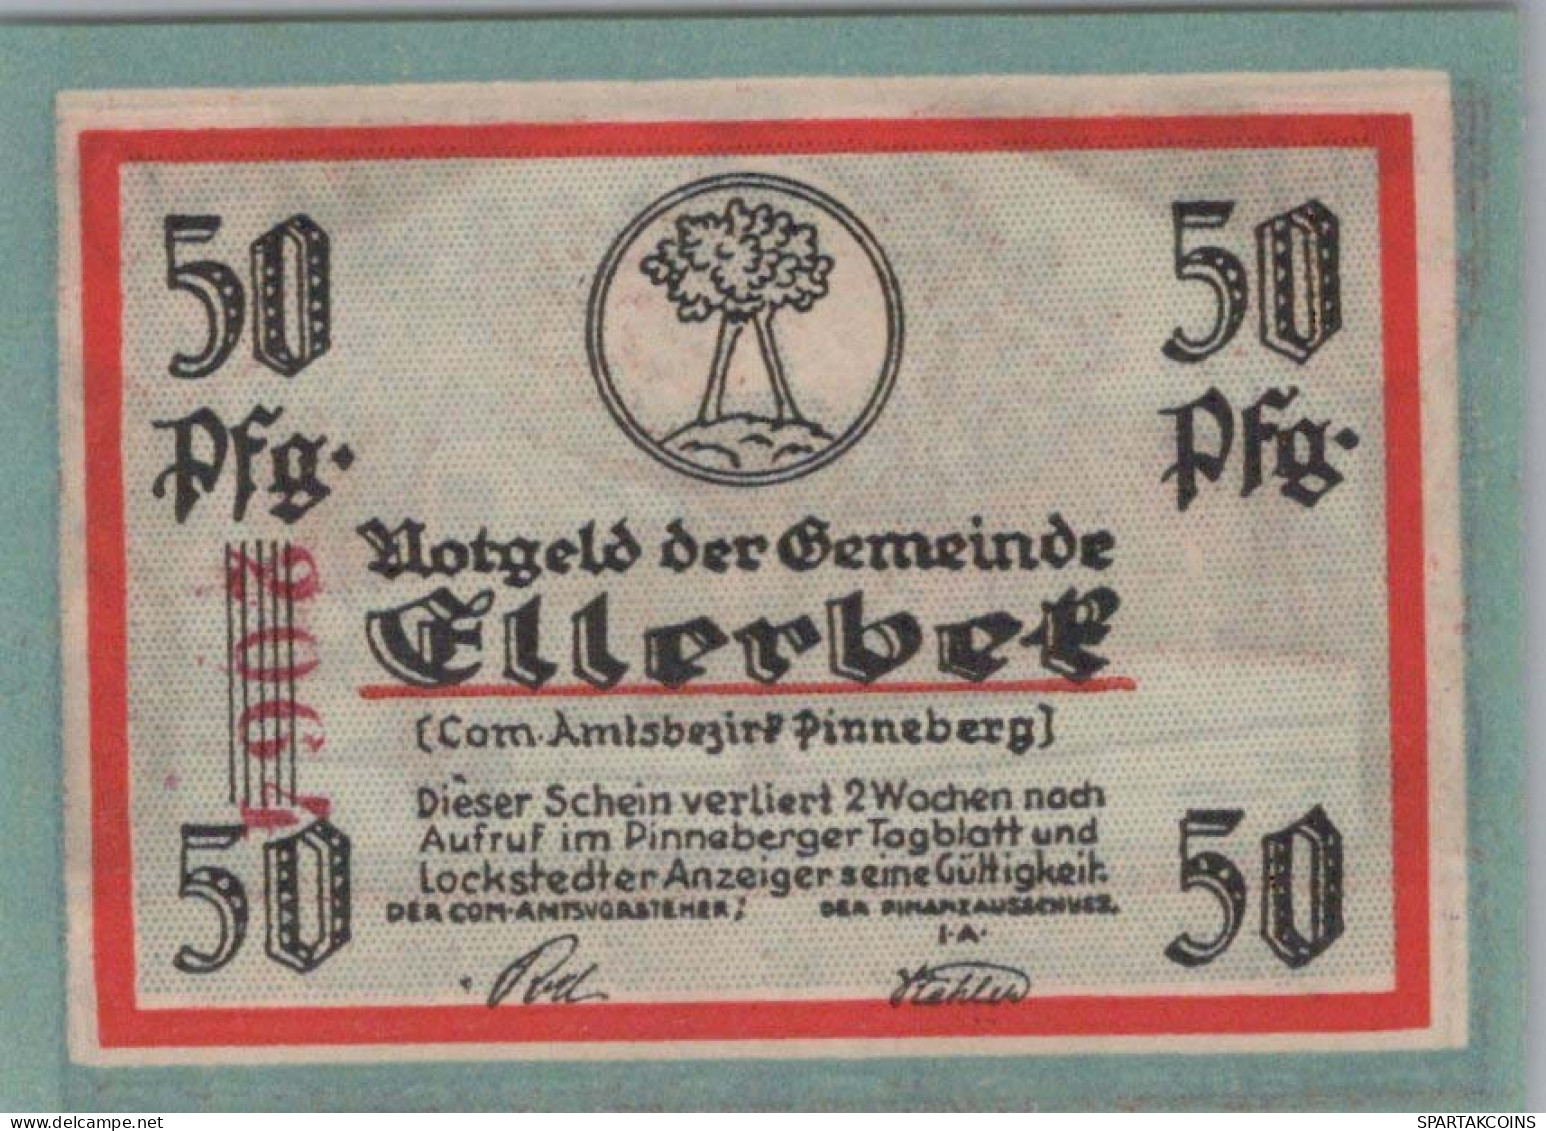 50 PFENNIG 1921 Stadt BREDSTEDT Schleswig-Holstein UNC DEUTSCHLAND #PB174 - [11] Local Banknote Issues